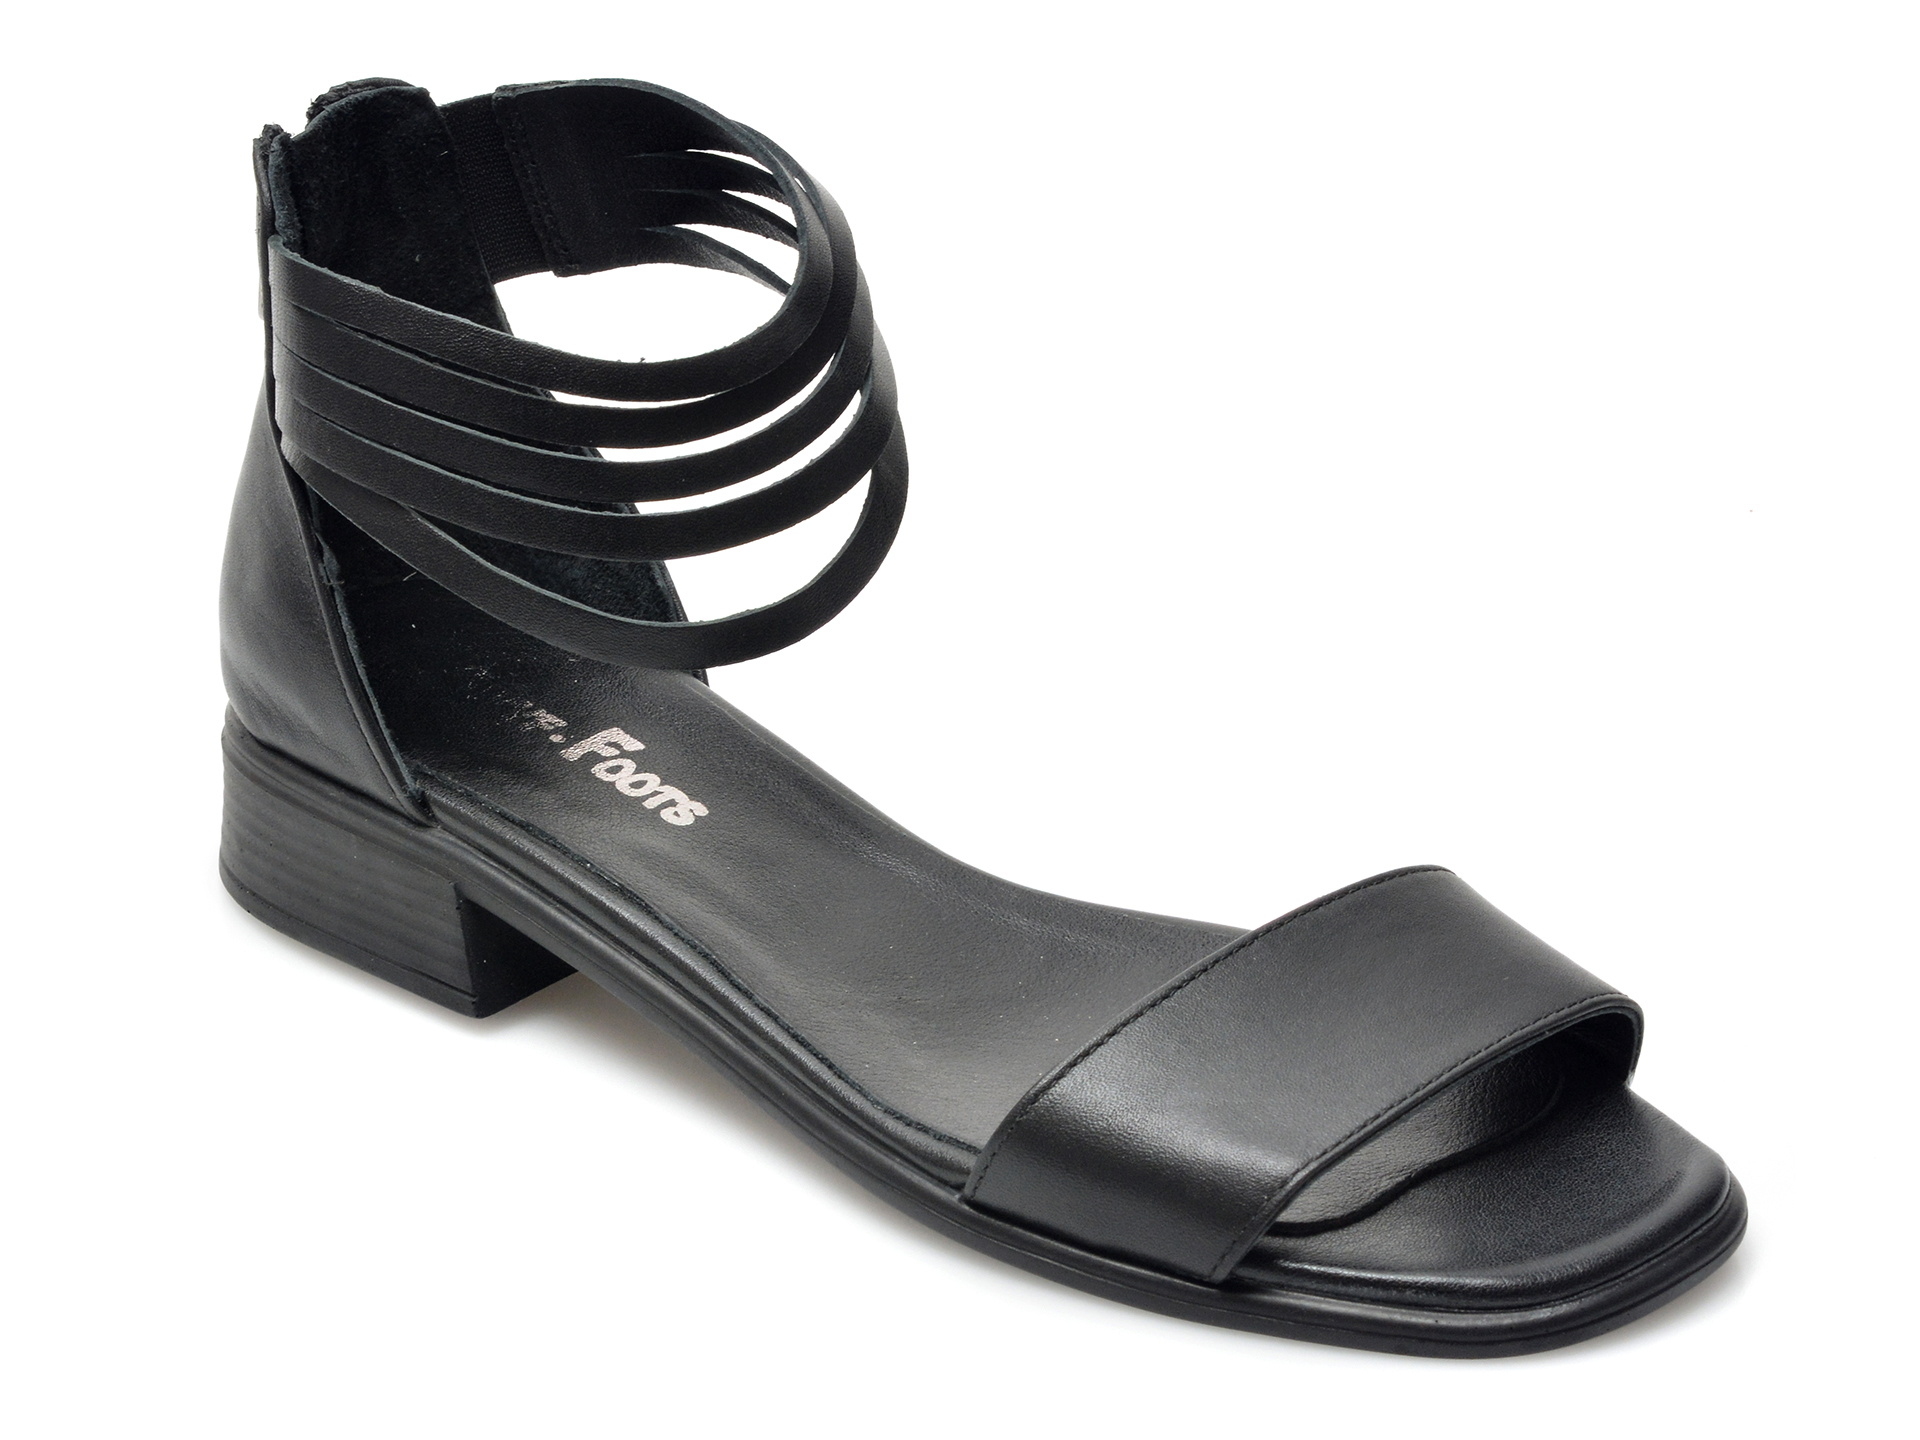 Sandale PUYYF FOOTS negre, 18206, din piele naturala 2023 ❤️ Pret Super Black Friday otter.ro imagine noua 2022